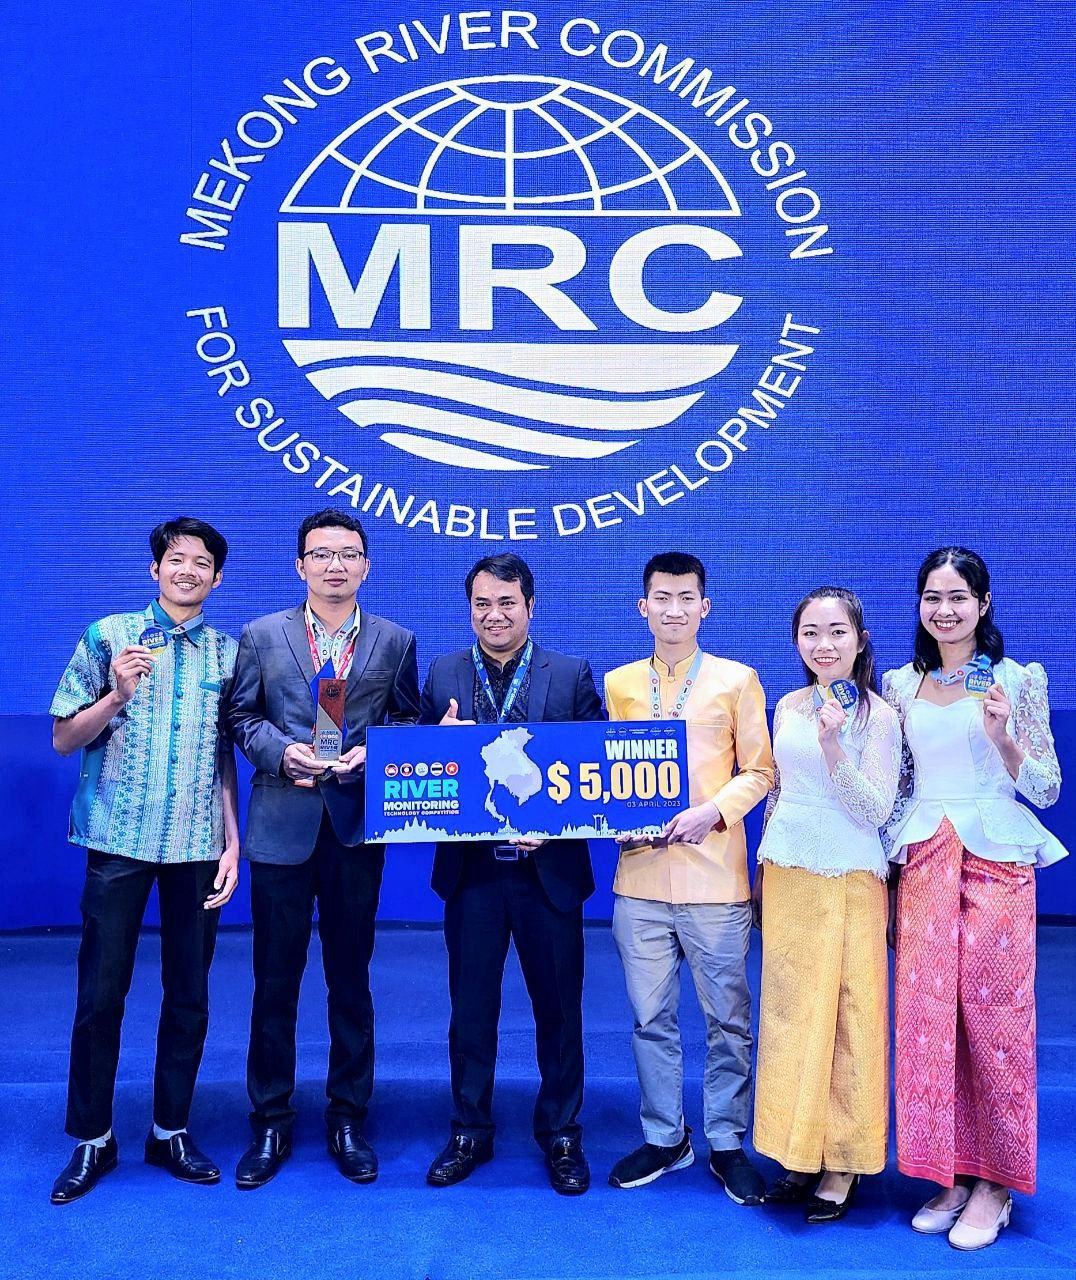 អបអរសាទរដល់ក្រុមនិស្សិតនិងគ្រូនៃវិទ្យាស្ថានបច្ចេកវិទ្យាកម្ពុជាដែលបានទទួលជ័យលាភីលេខ១ក្នុងការប្រកួត MRC River Monitoring Technology Competition